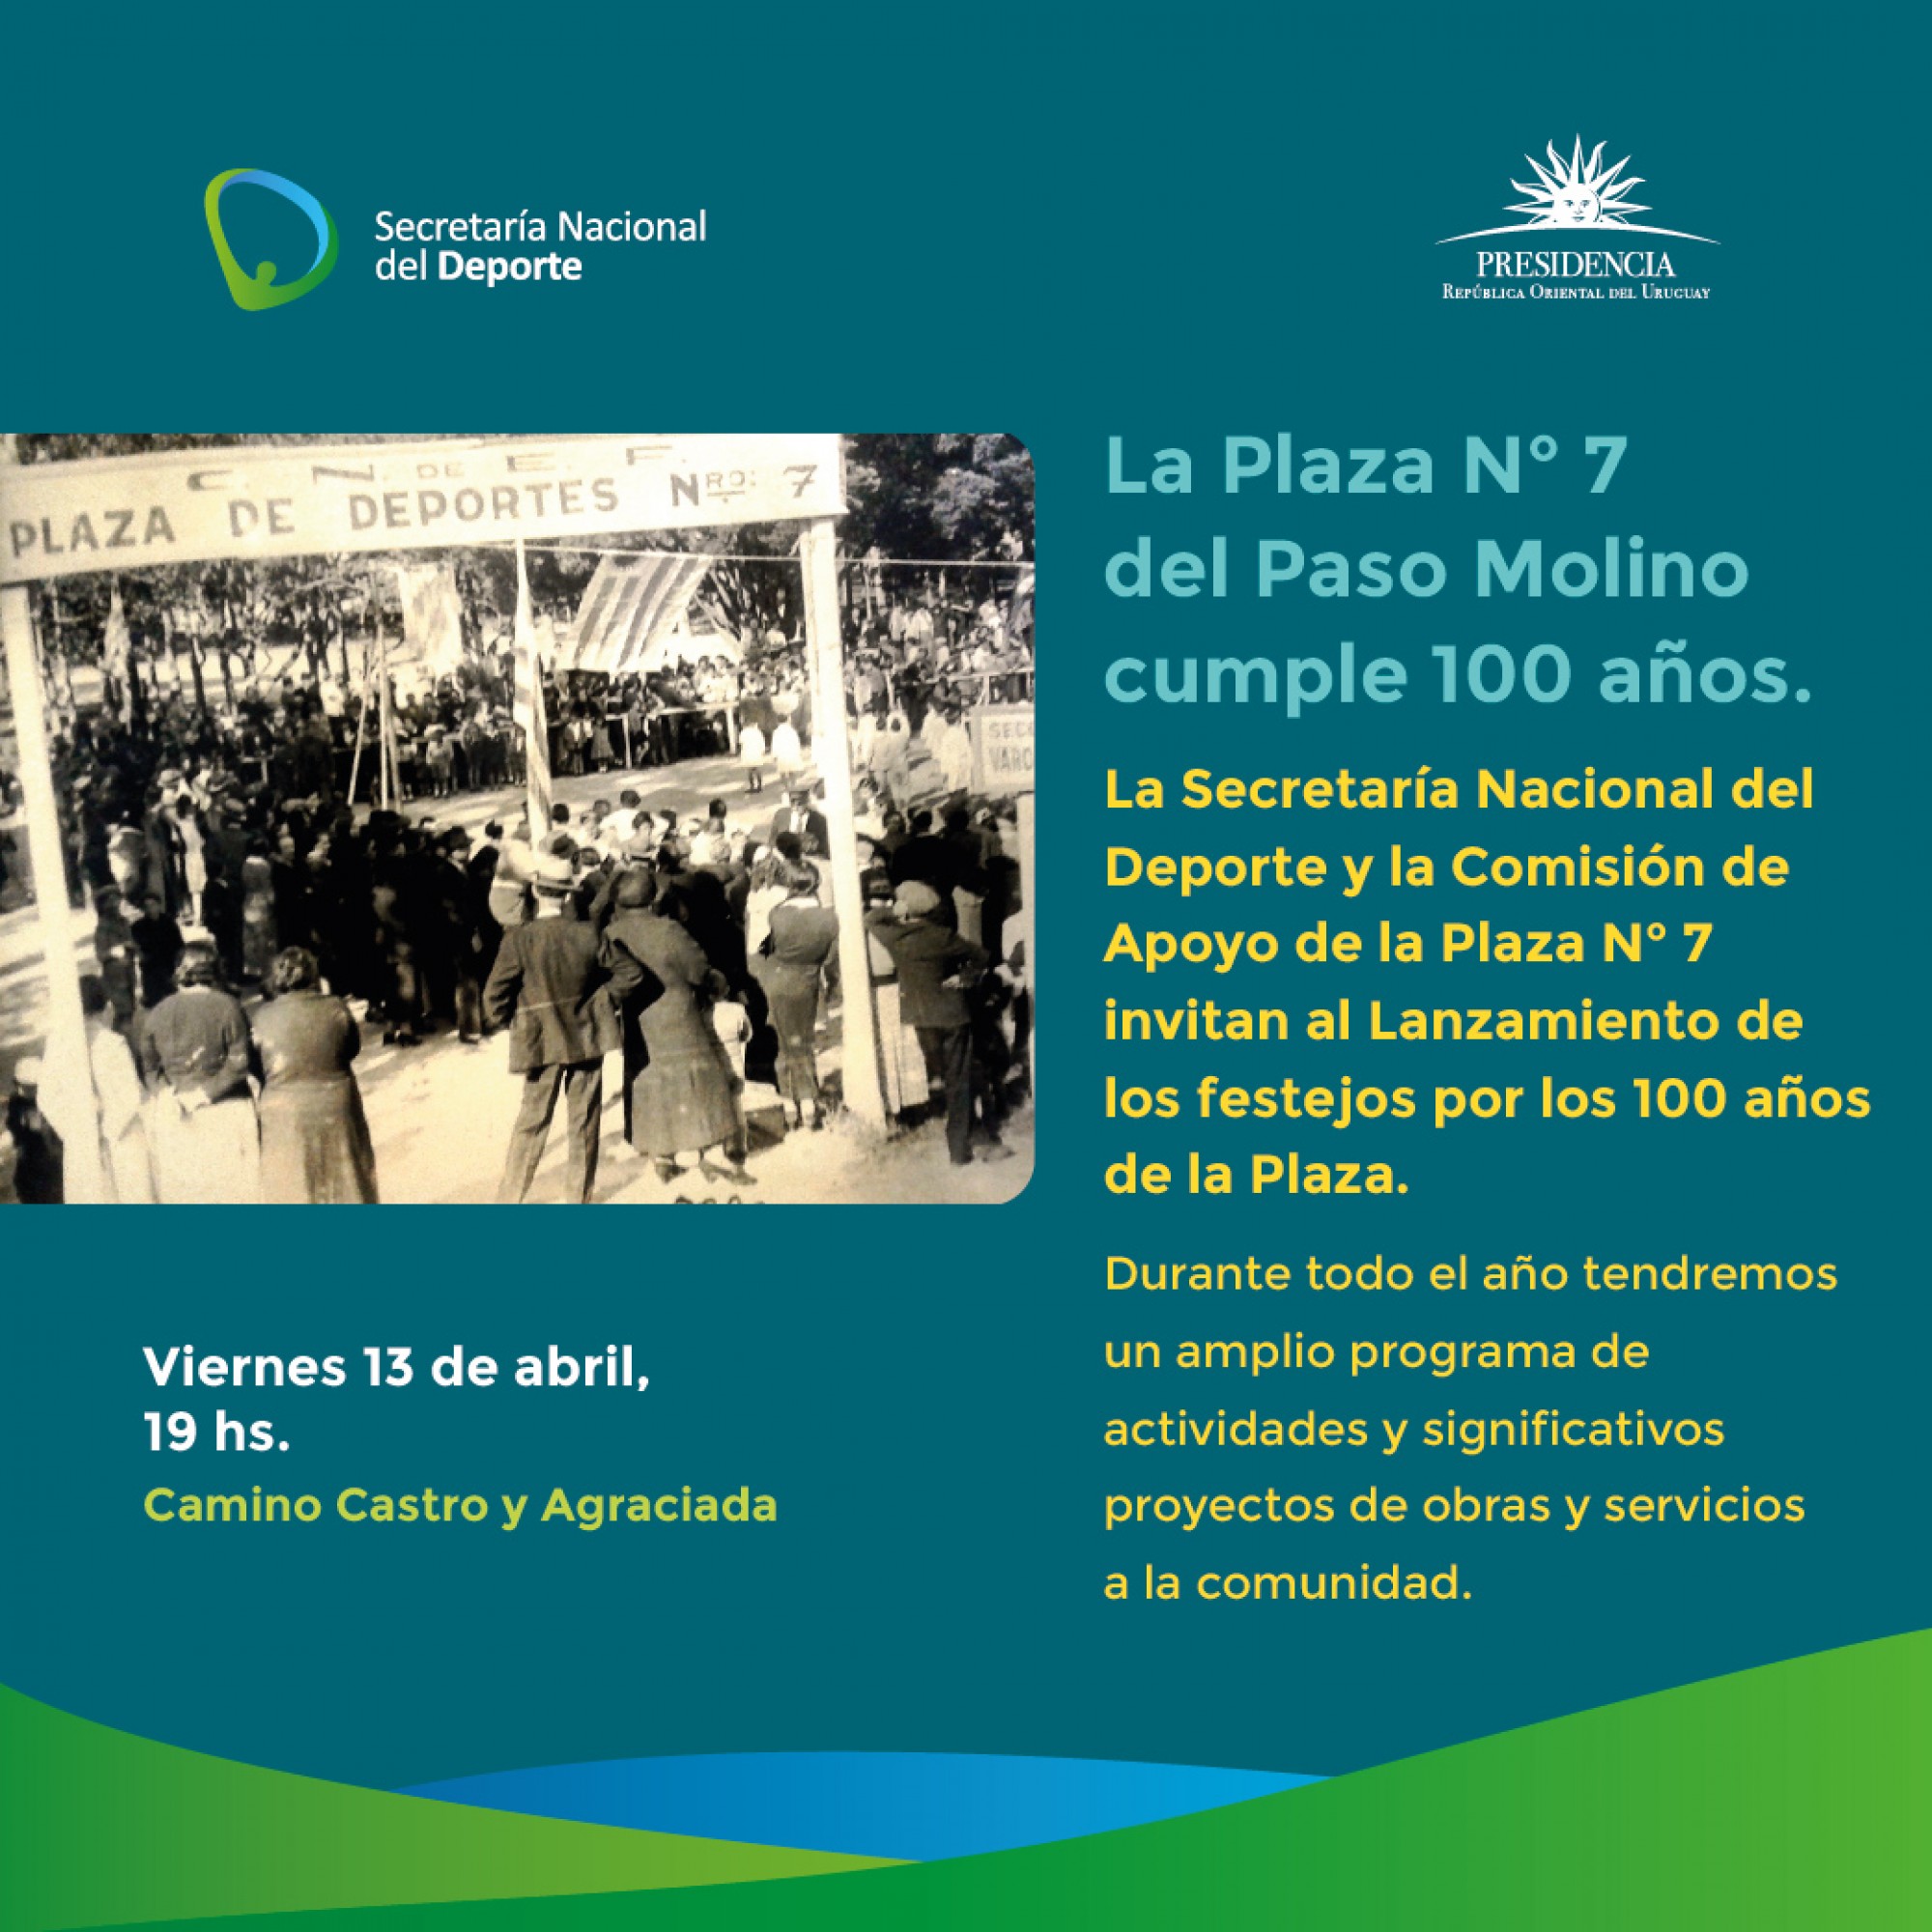 ¡La Plaza de Deportes N.º 7 Cumple 100 años!